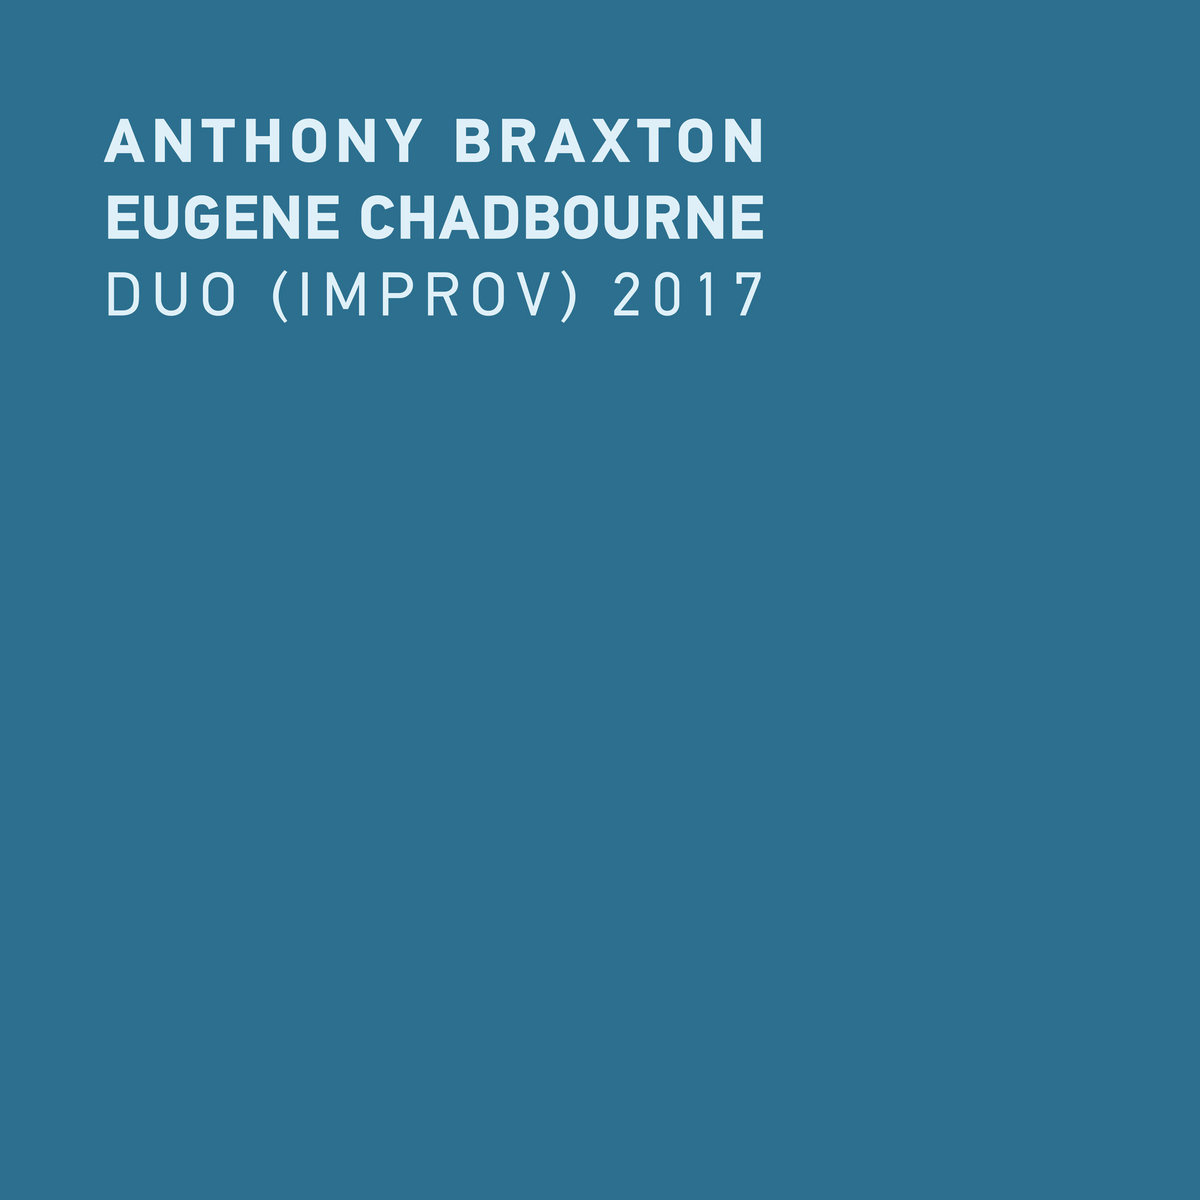 Anthony Braxton & Eugene Chadbourne – Duo (Improv) 2017 (2020) [FLAC 24bit/48kHz]